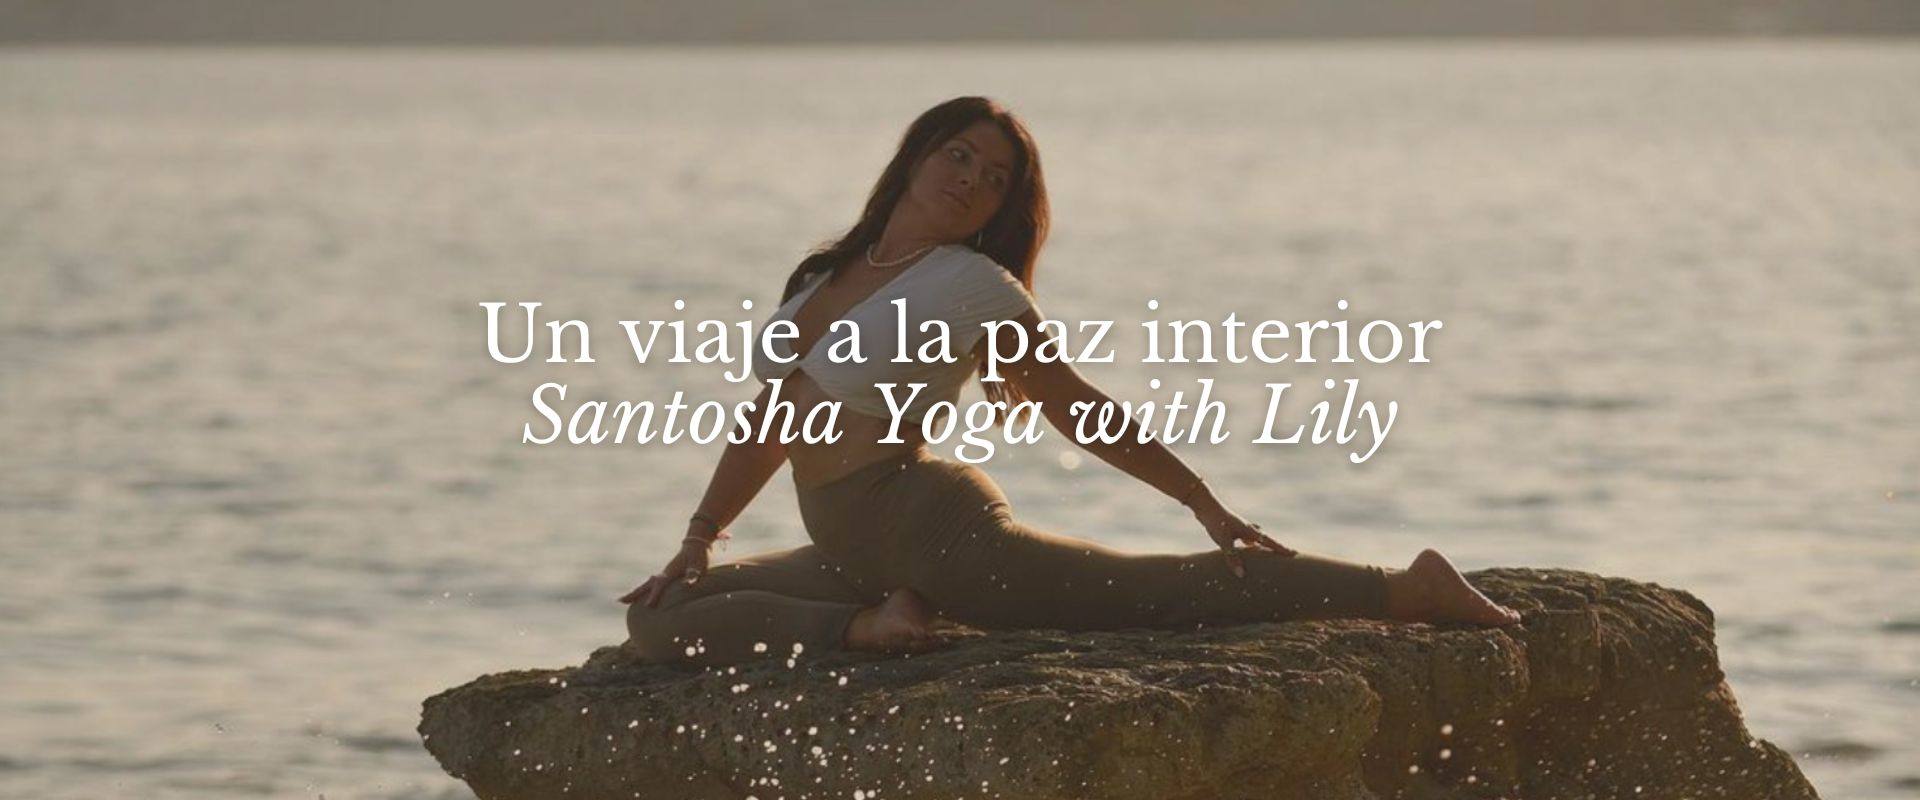 Descubre el Yoga en Moraira - Un viaje a la paz interior